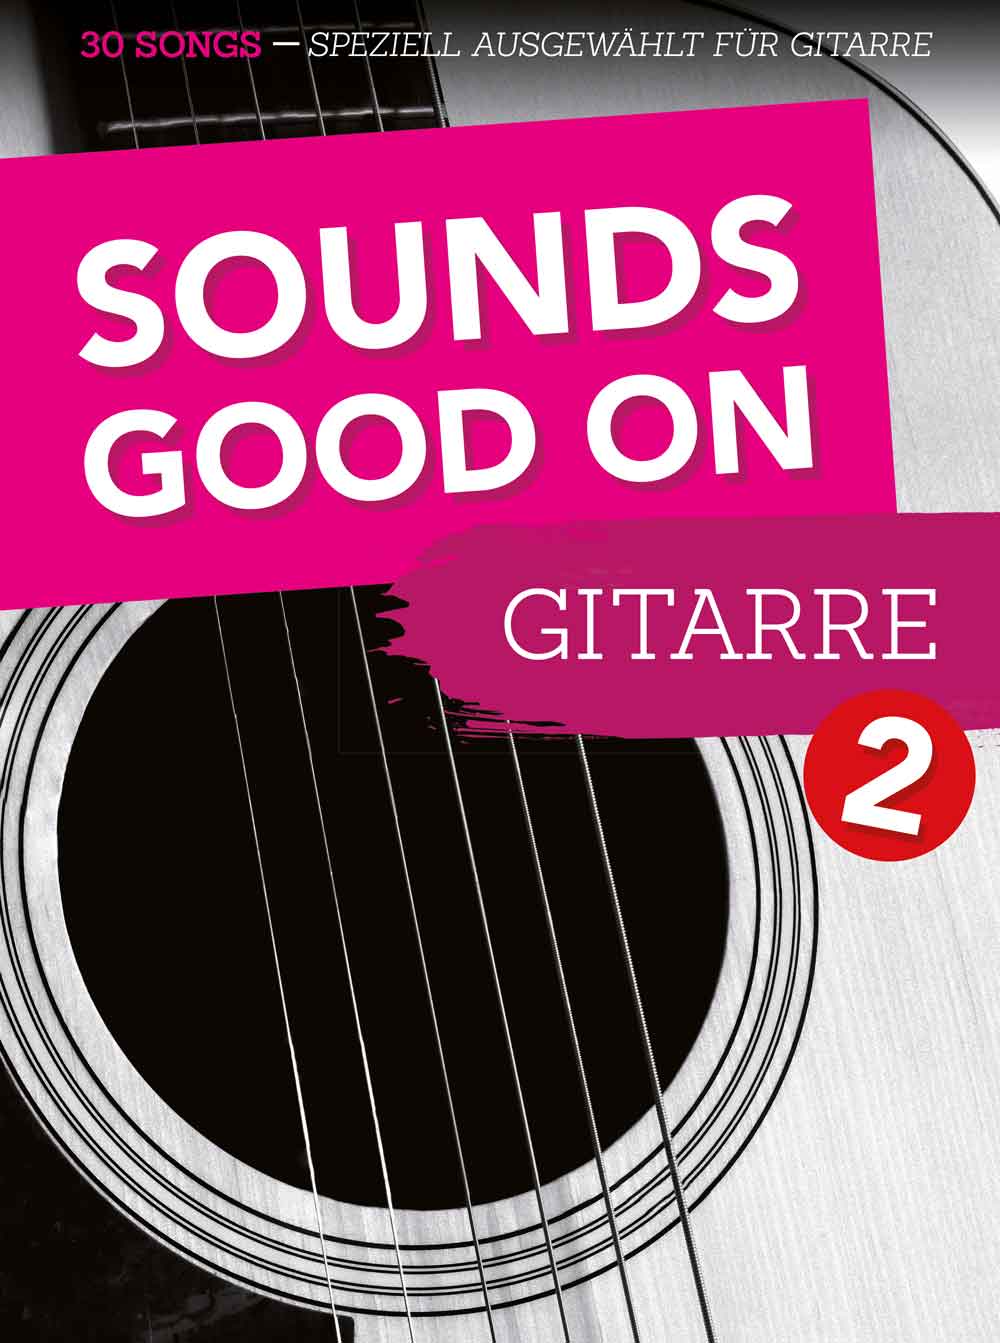 Sounds Good On Gitarre 2: 30 Songs - speziell ausgewählt für Gitarre